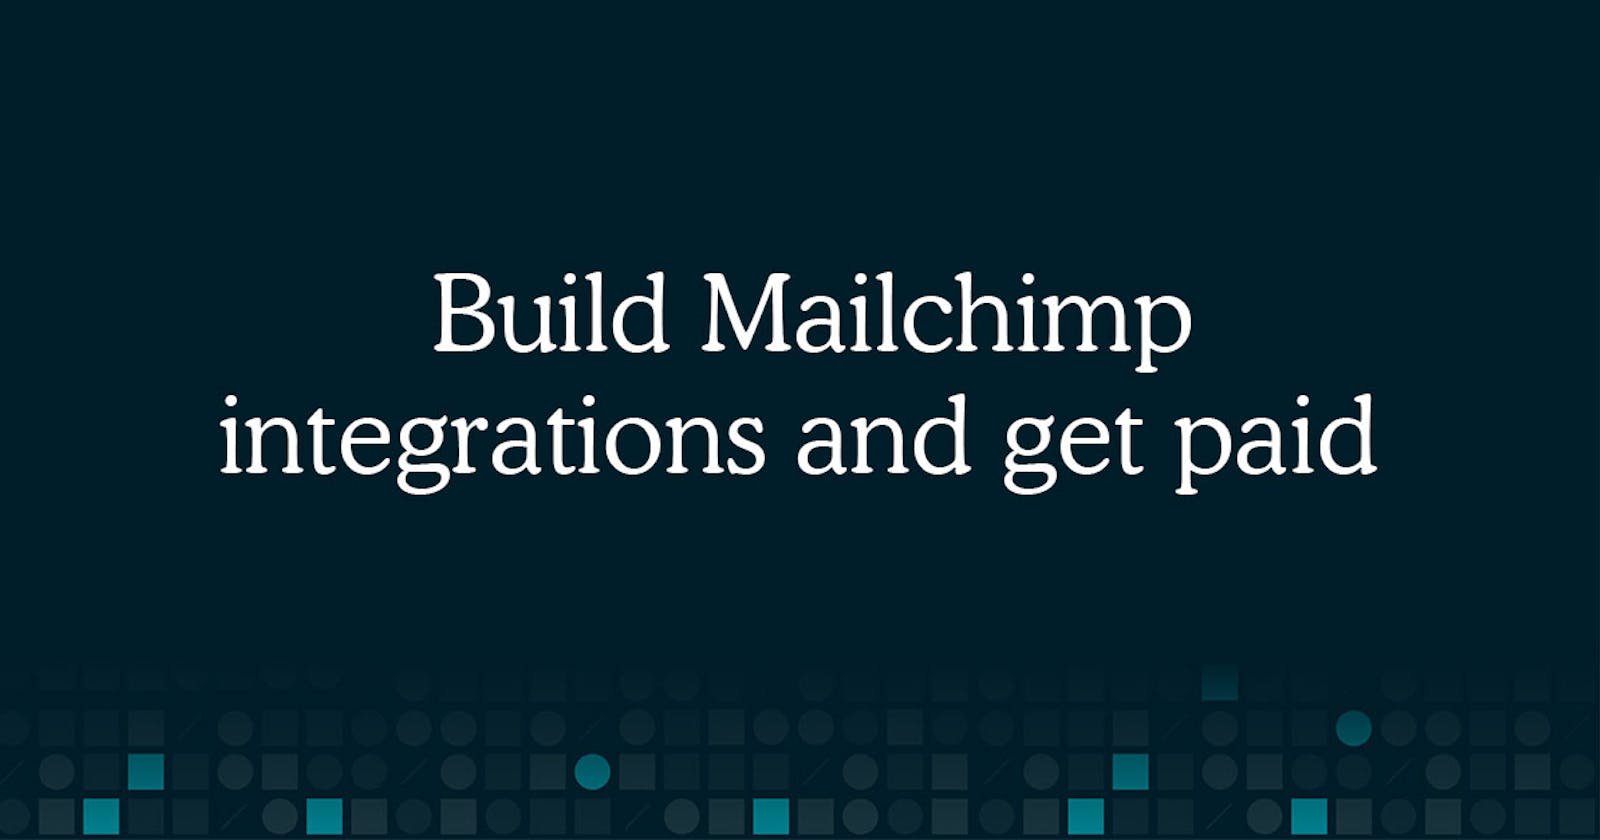 Mailchimp $1M Integration Fund!